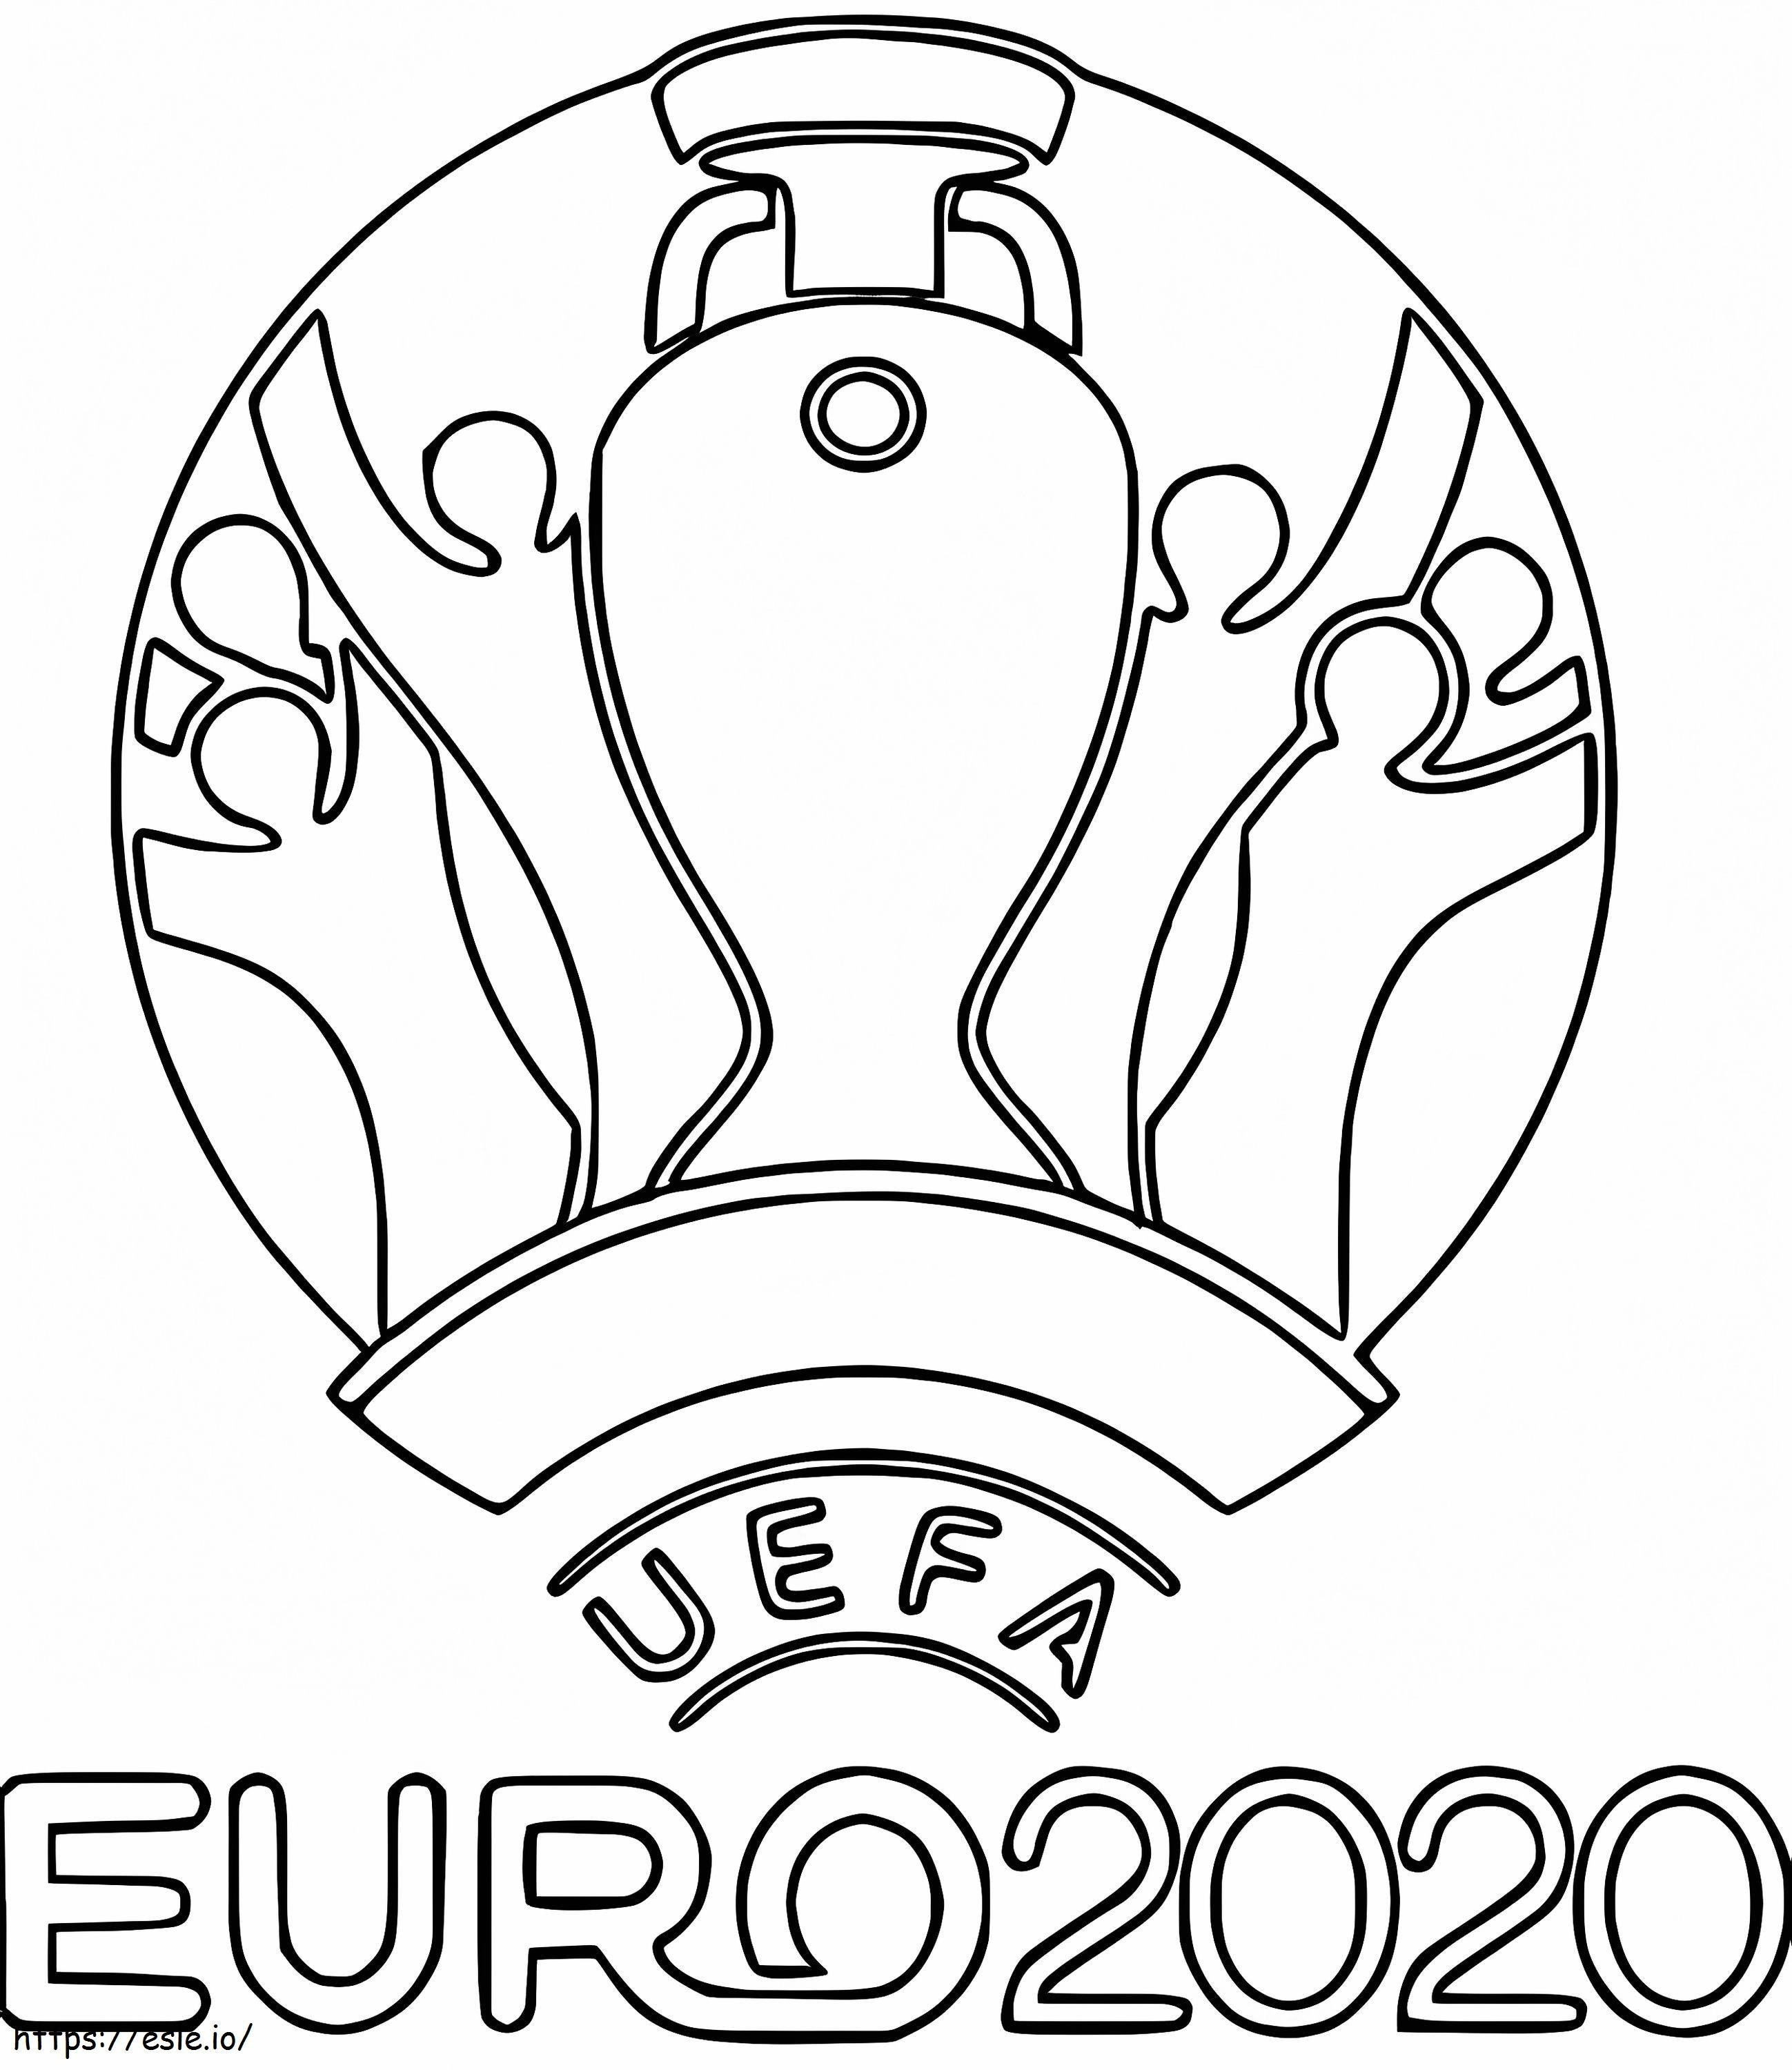 Eurocopa 2020 2021 para colorear